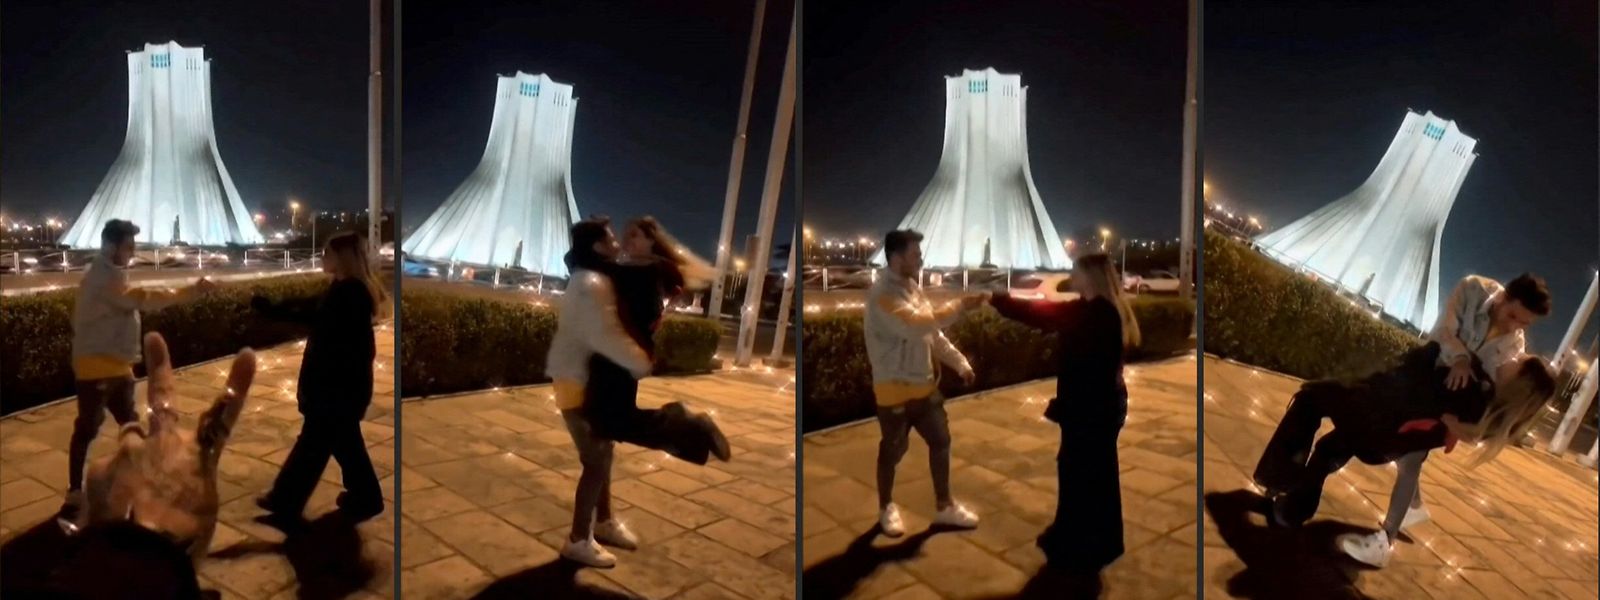 O jovem casal fez um vídeo em frente a um dos principais monumentos de Teerão que se tornou viral